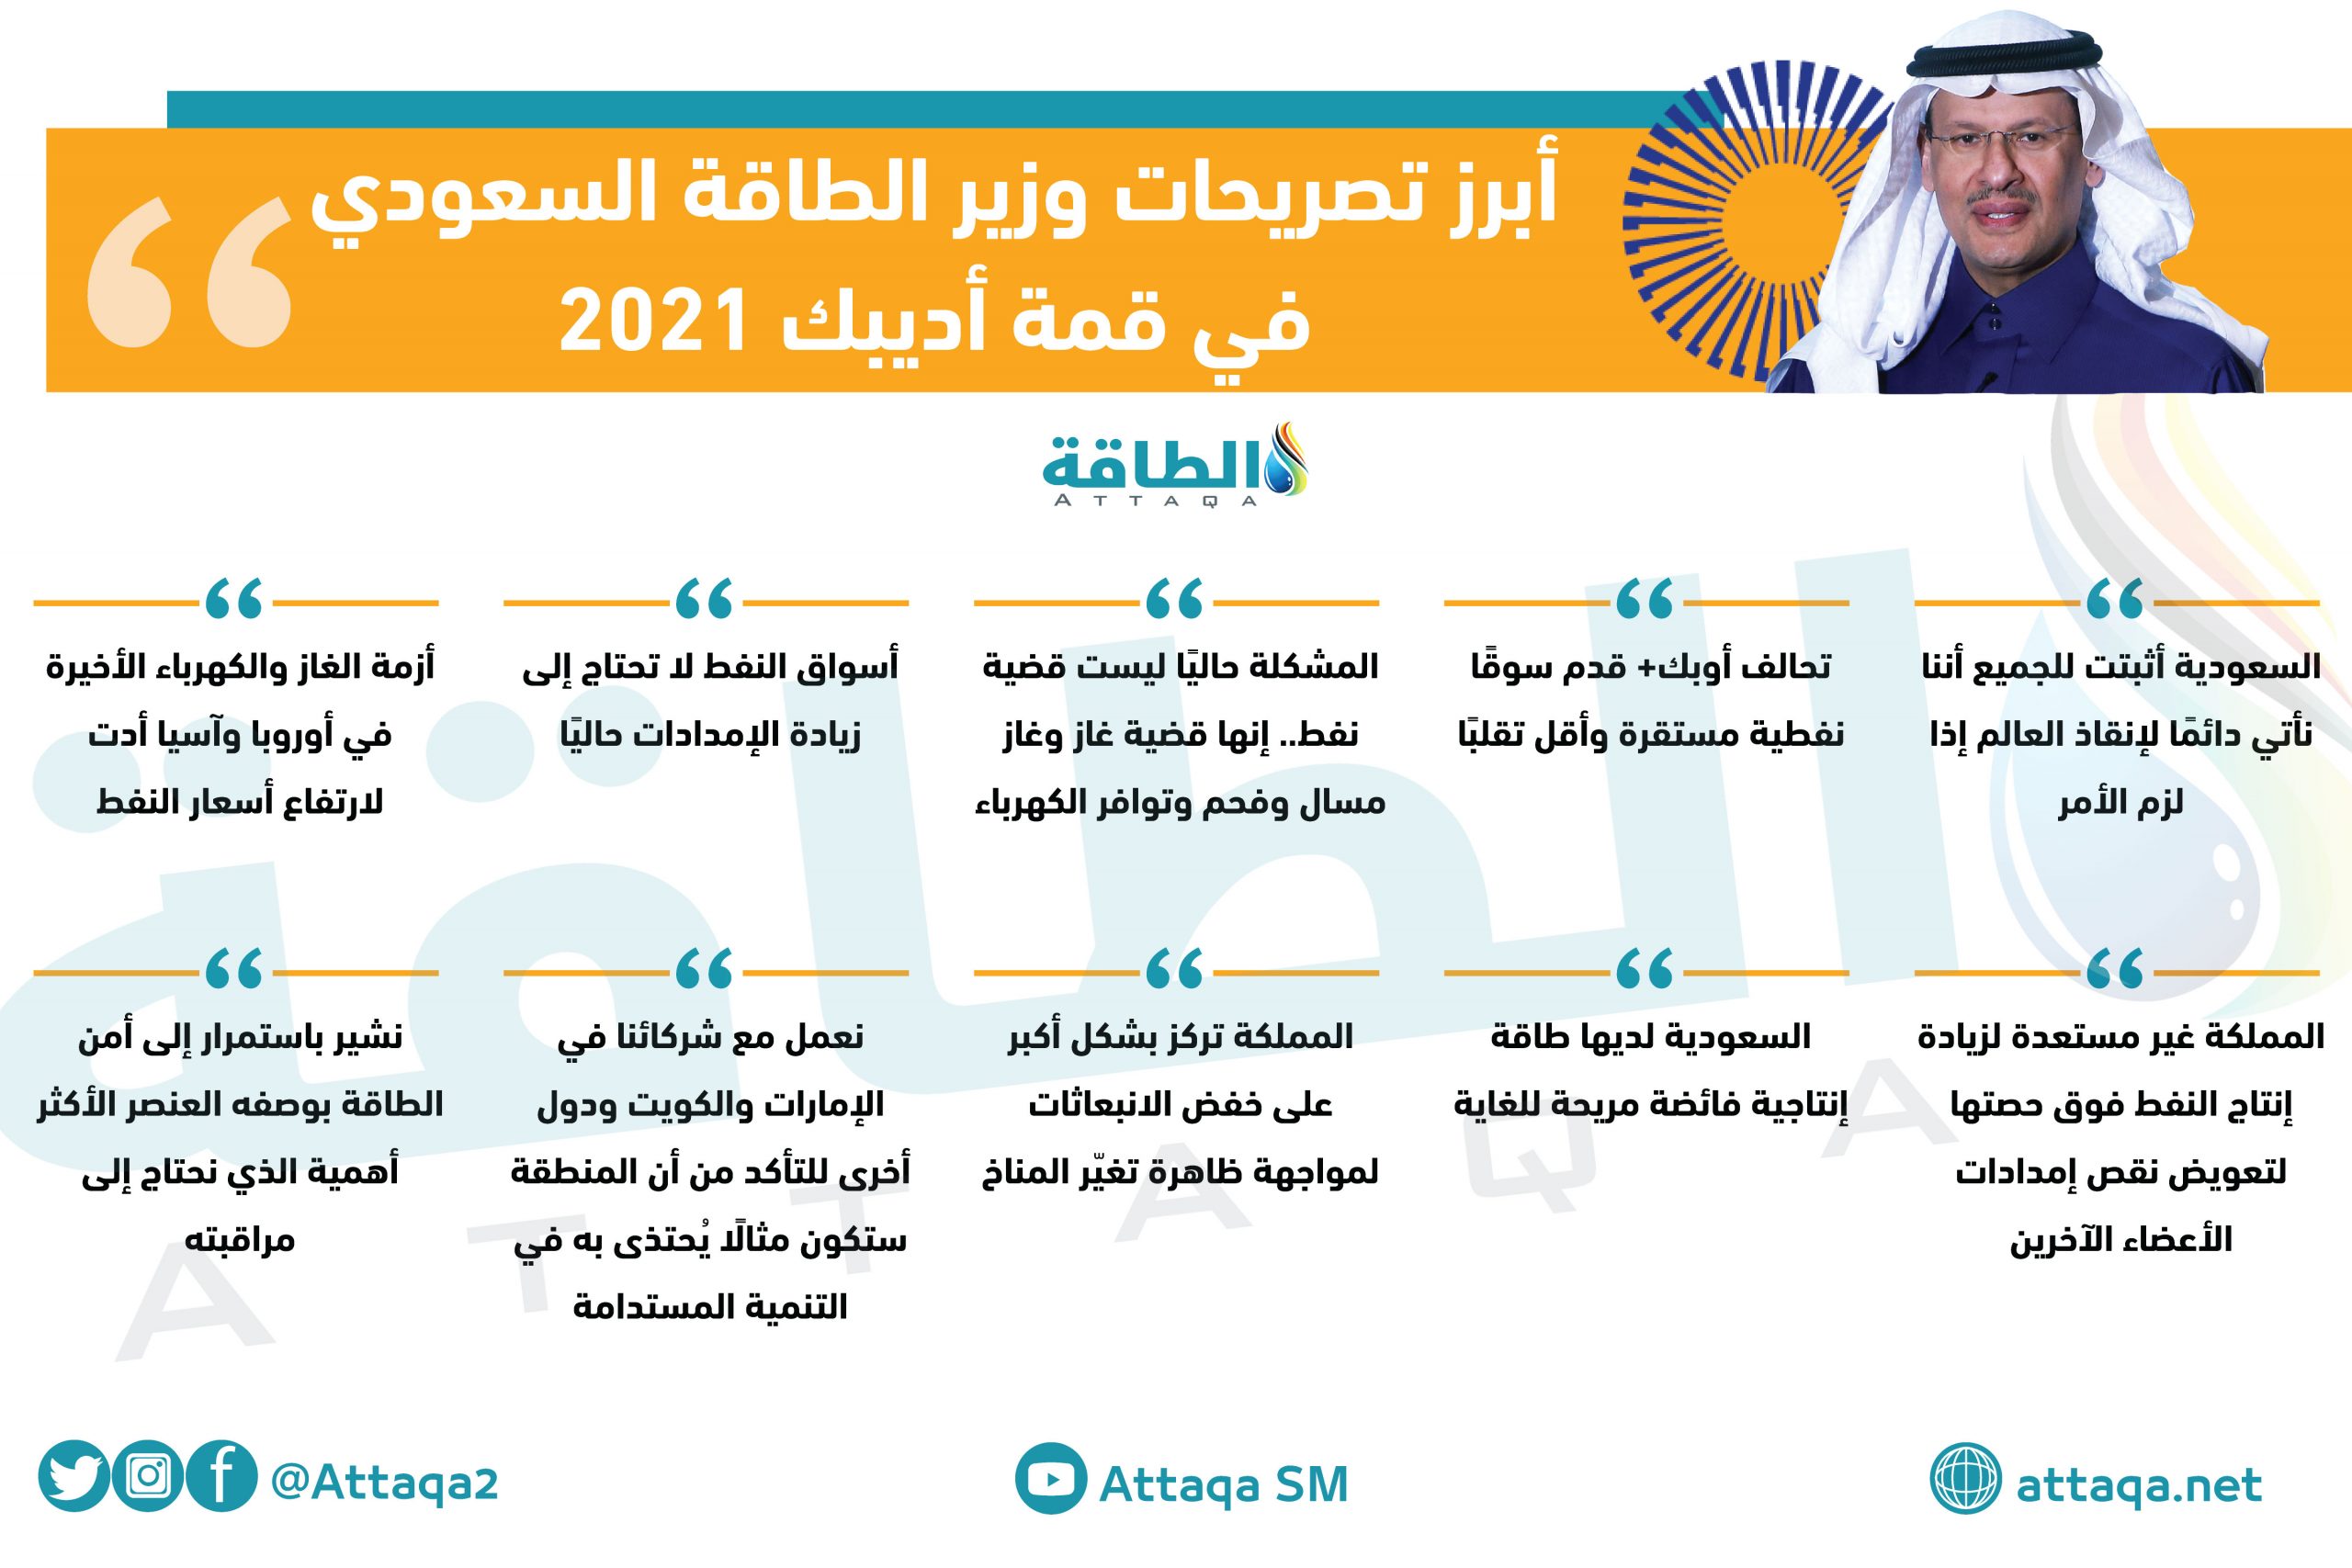 تصريحات وزير الطاقة السعودي في أديبك 2021